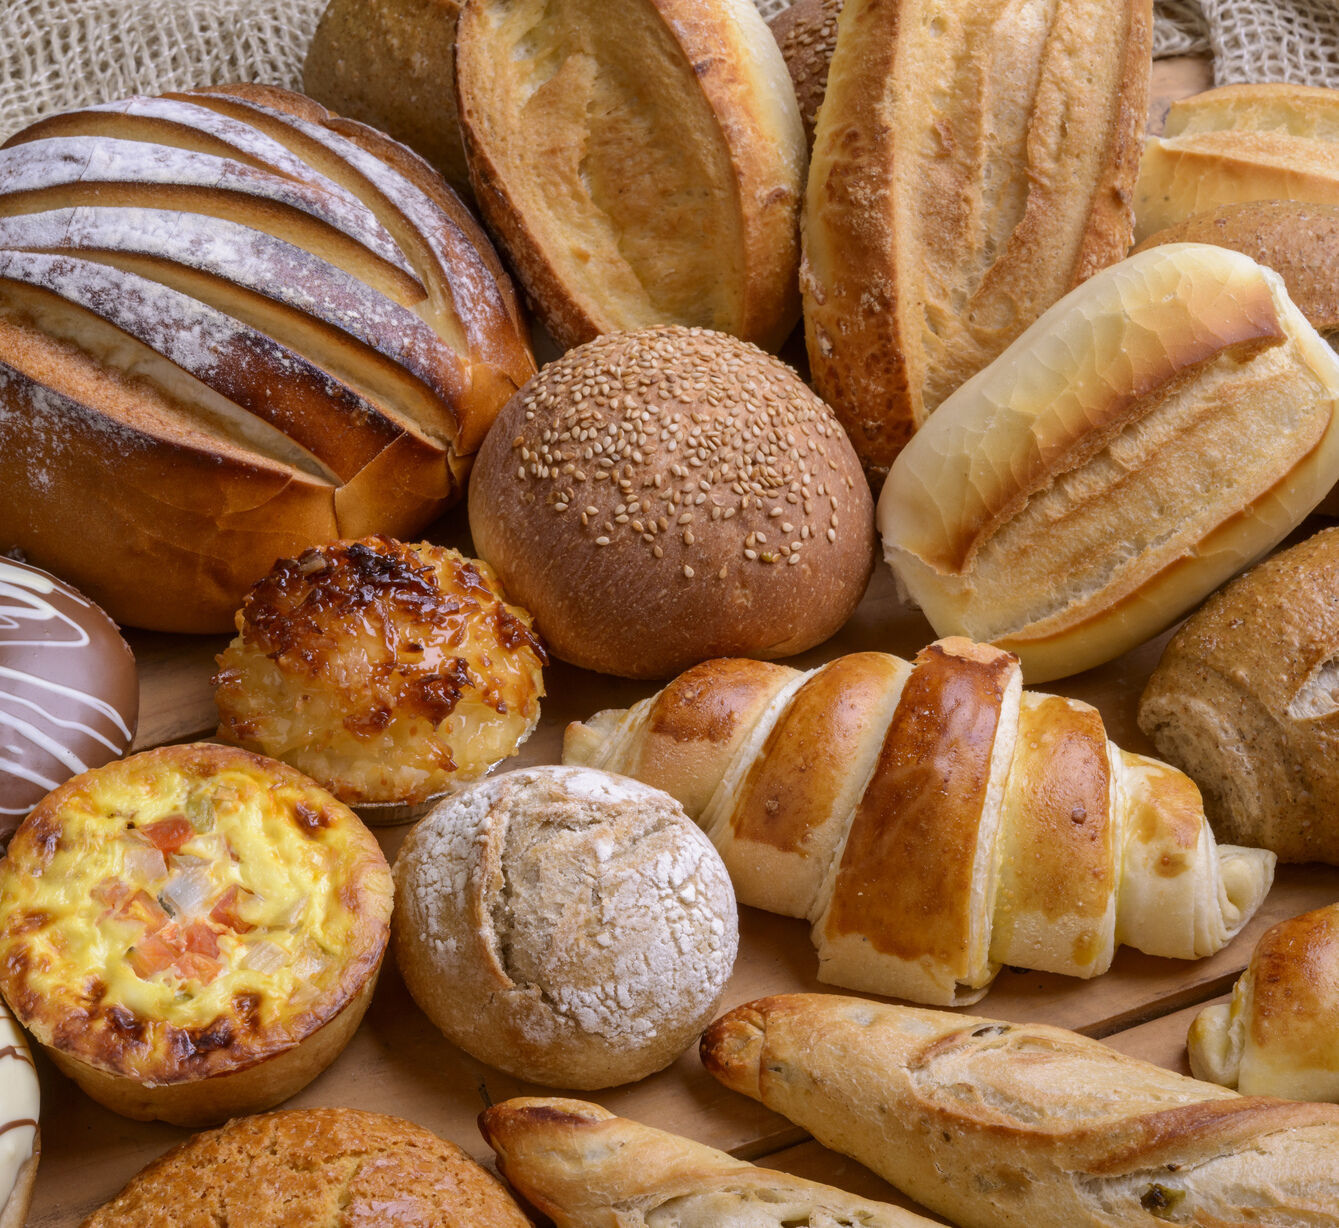 เบเกอรี่ ขนมปัง เค้ก พาย คุ้กกี้ หรือขนมอบประเภทต่างๆ